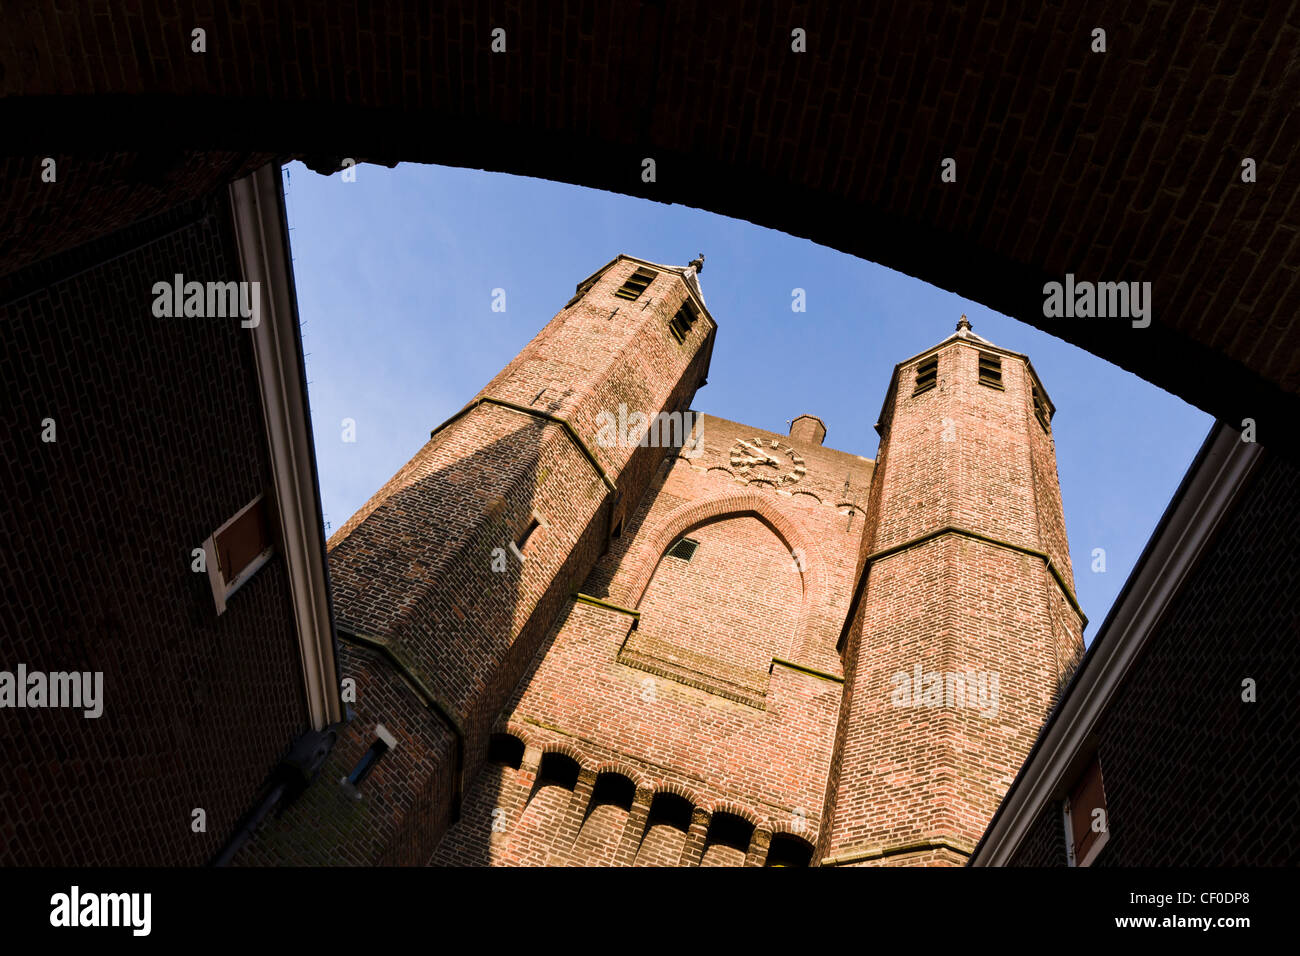 Amsterdamse Poort Stadttor in Haarlem, Niederlande Stockfoto